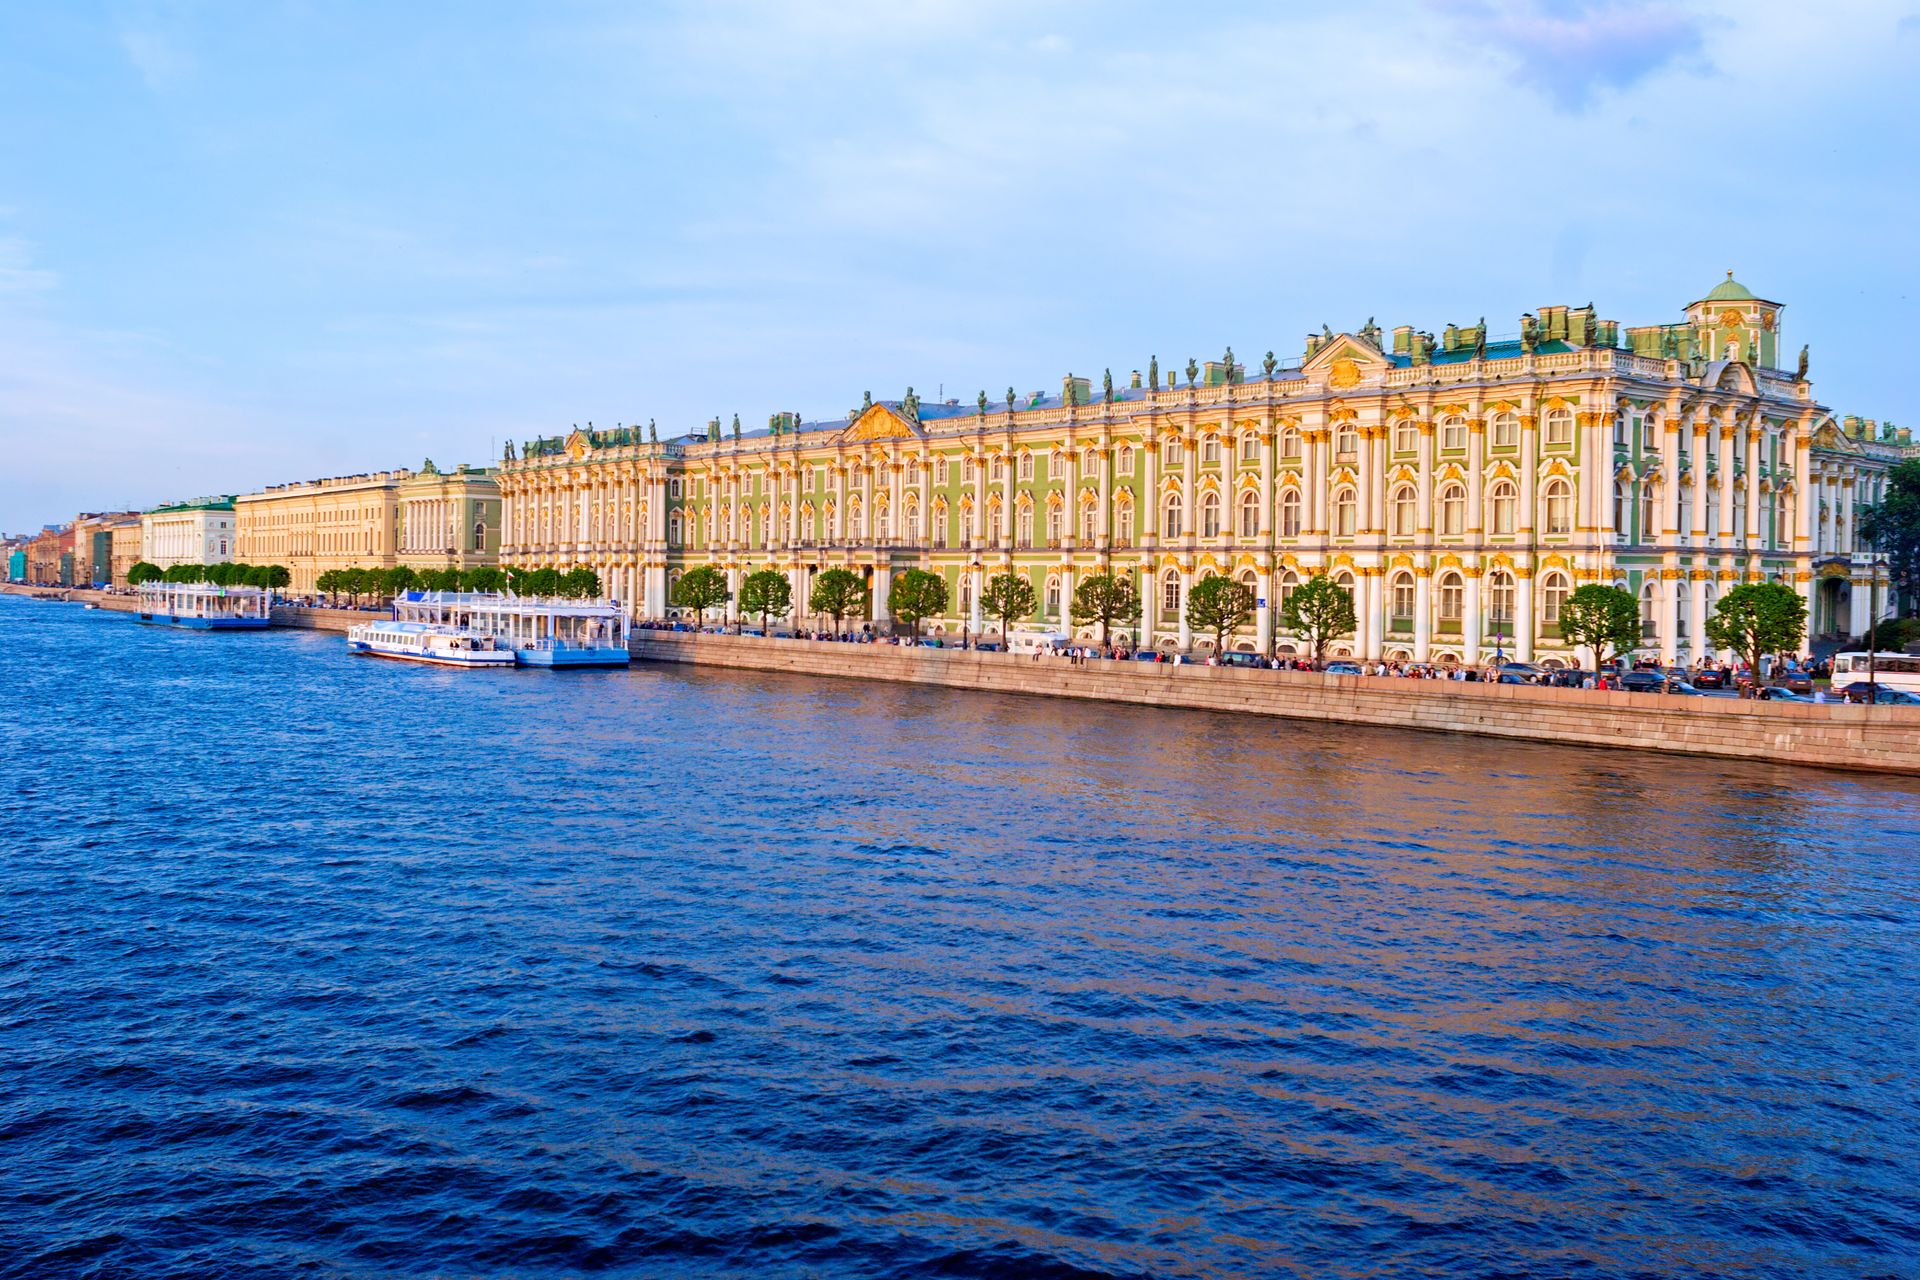 Musée de l'Ermitage - Saint-Pétersbourg - Russie ©iStock